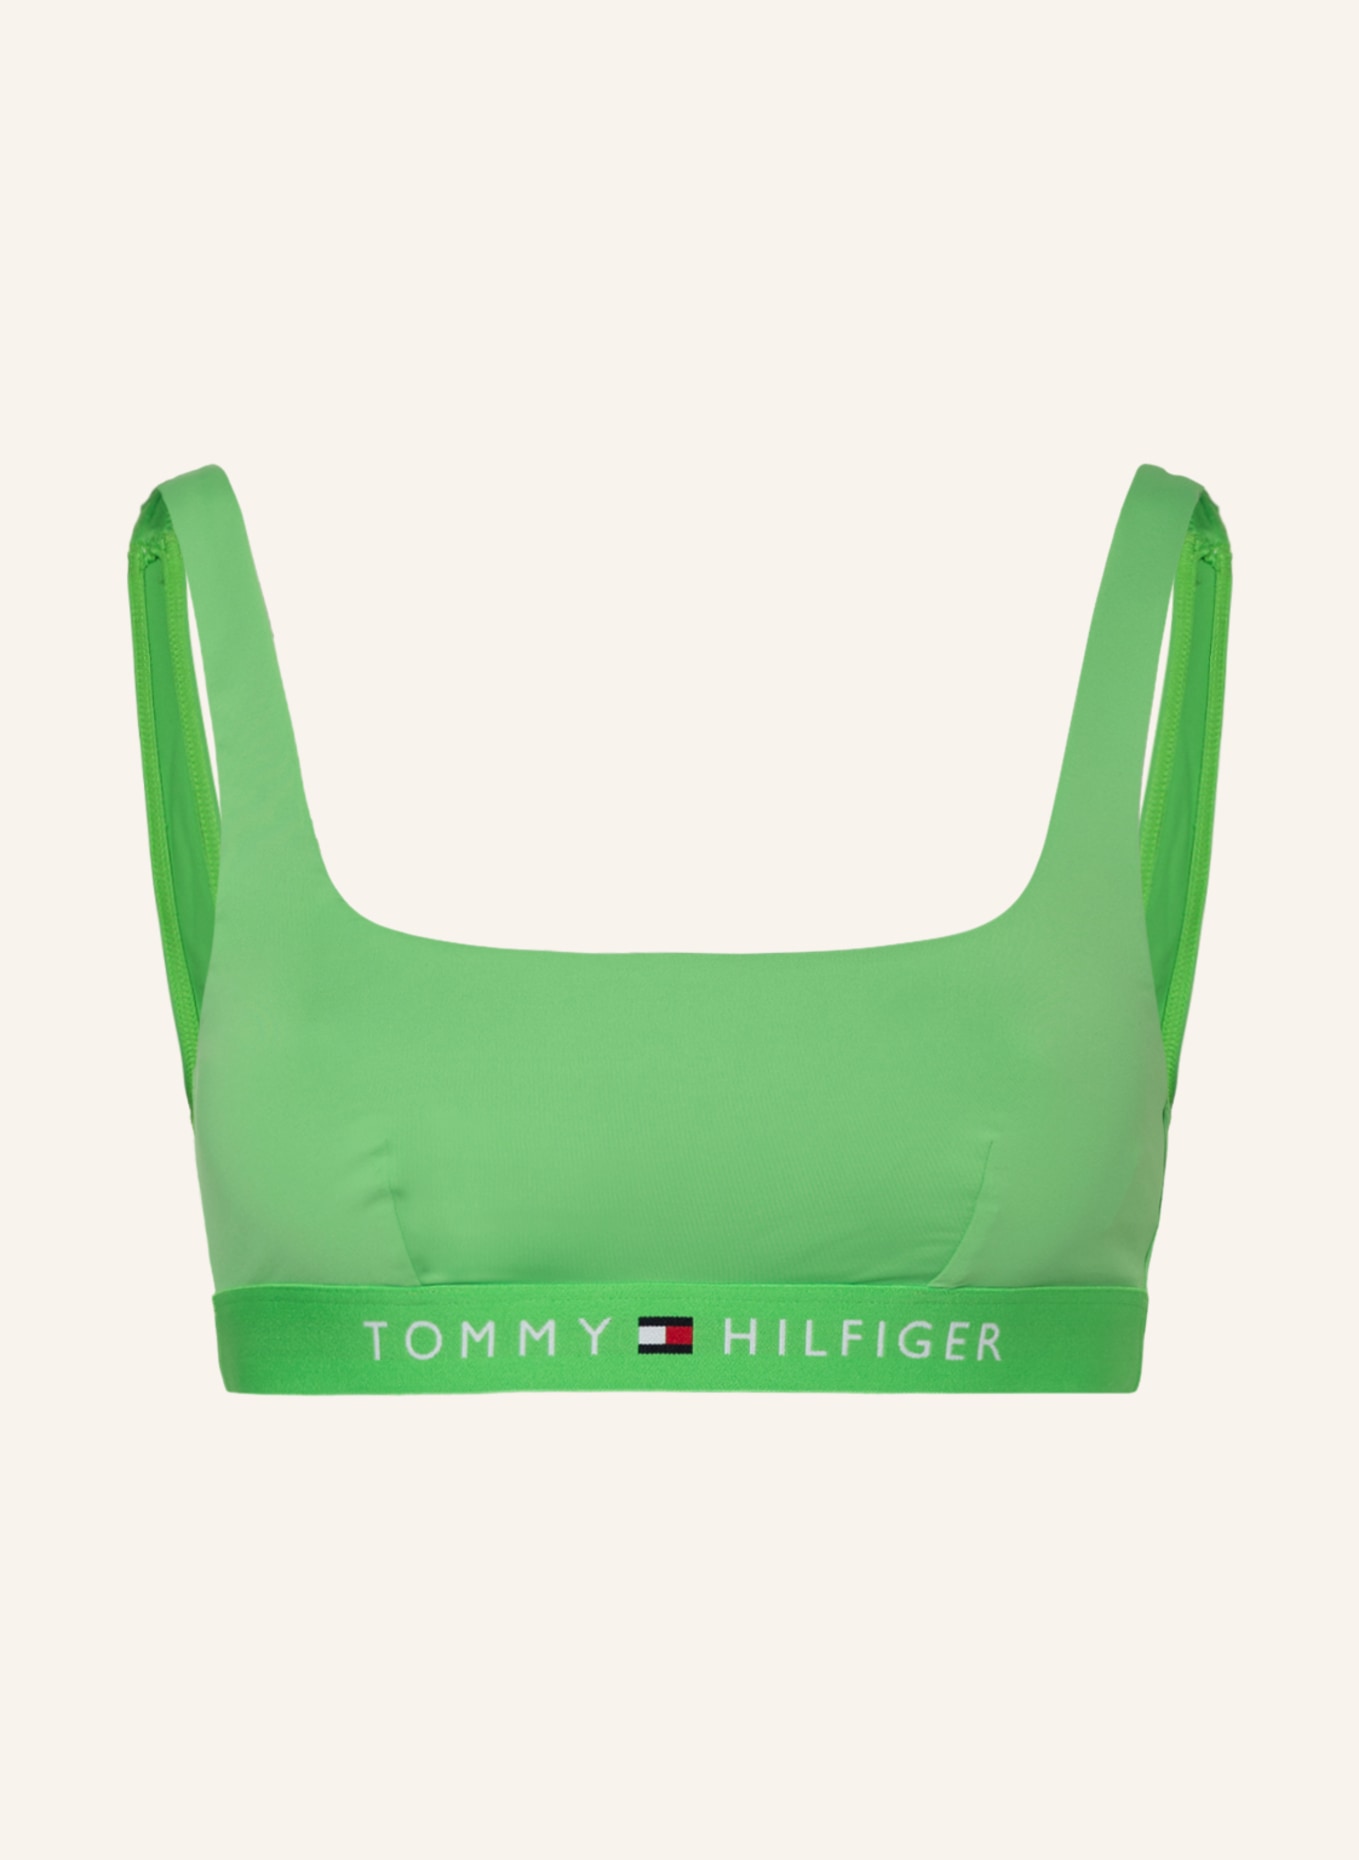 TOMMY HILFIGER Bralette bikini top, Color: LIGHT GREEN (Image 1)